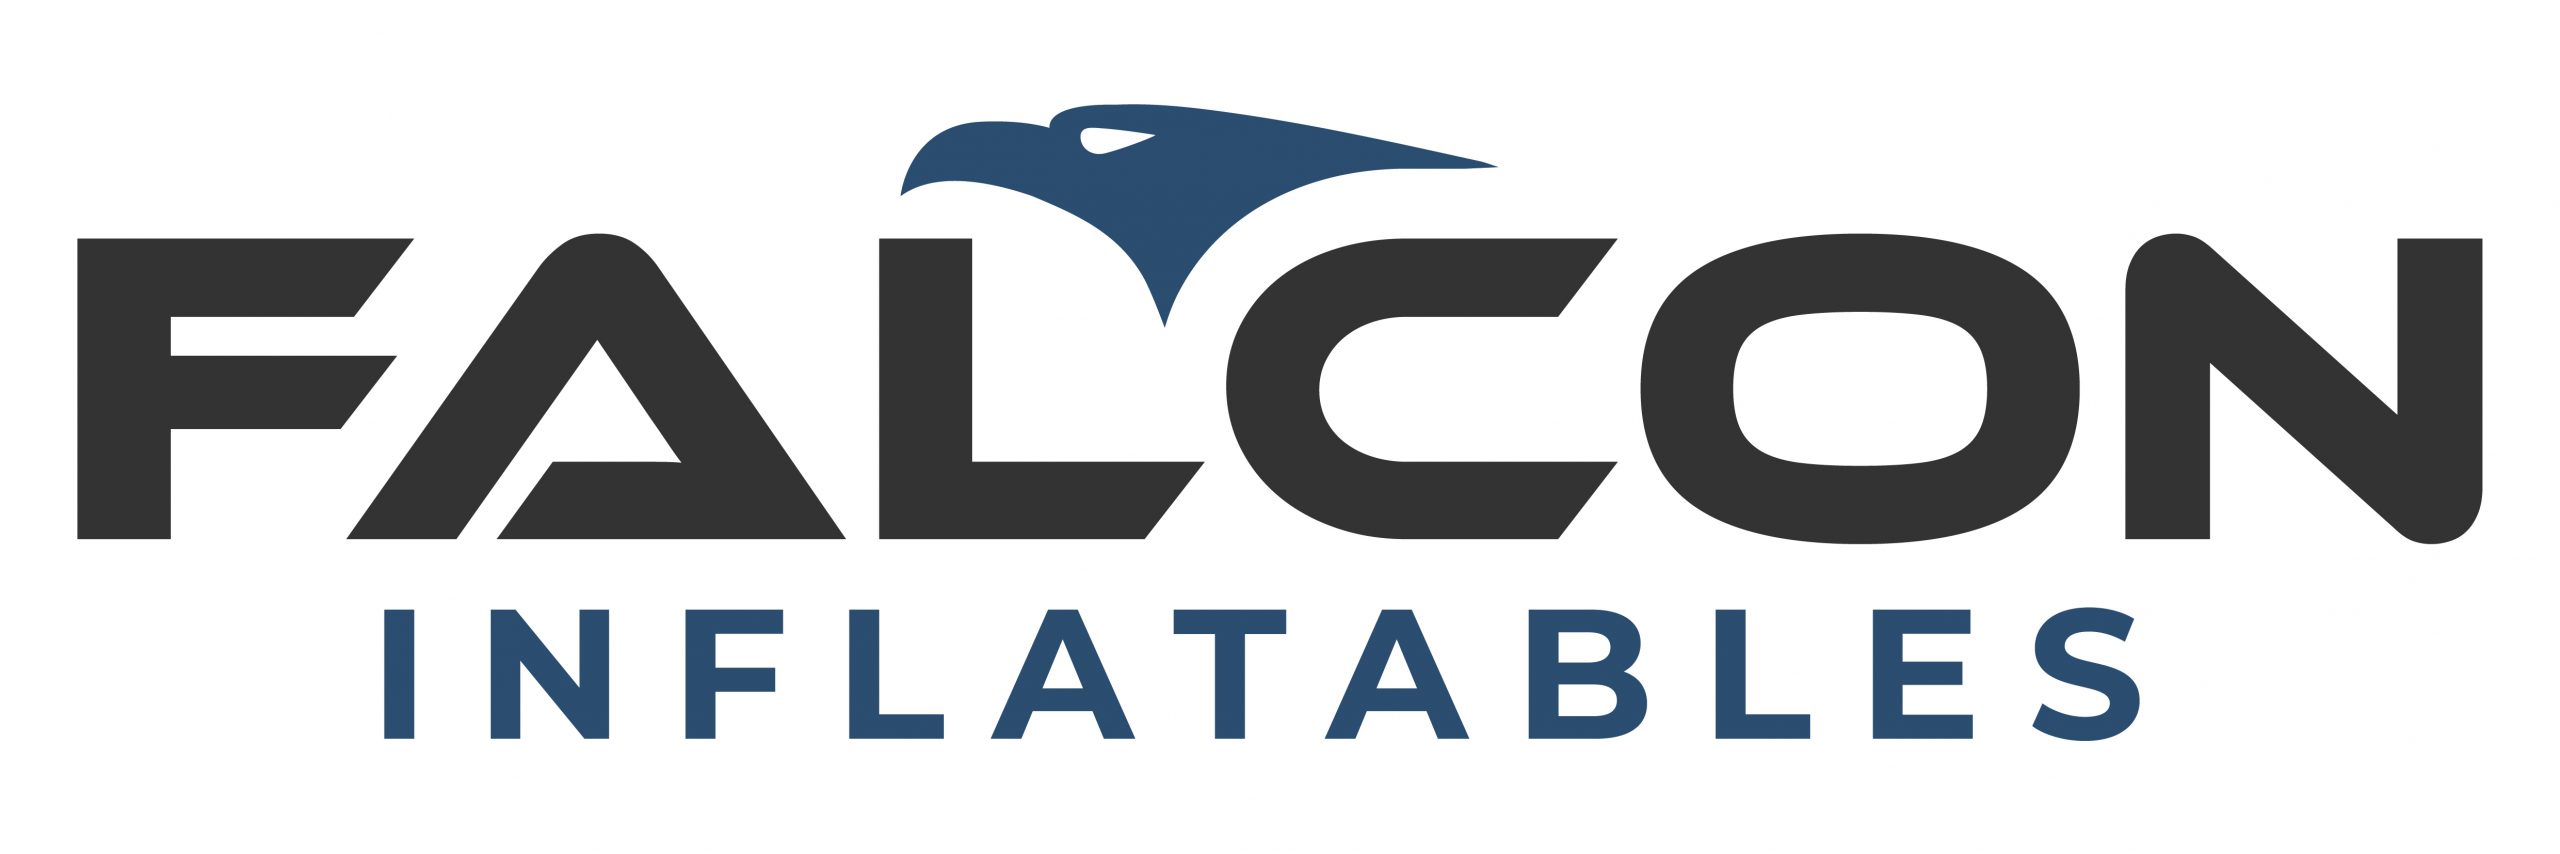 Flexiteek - Falcon Inflatables Logo